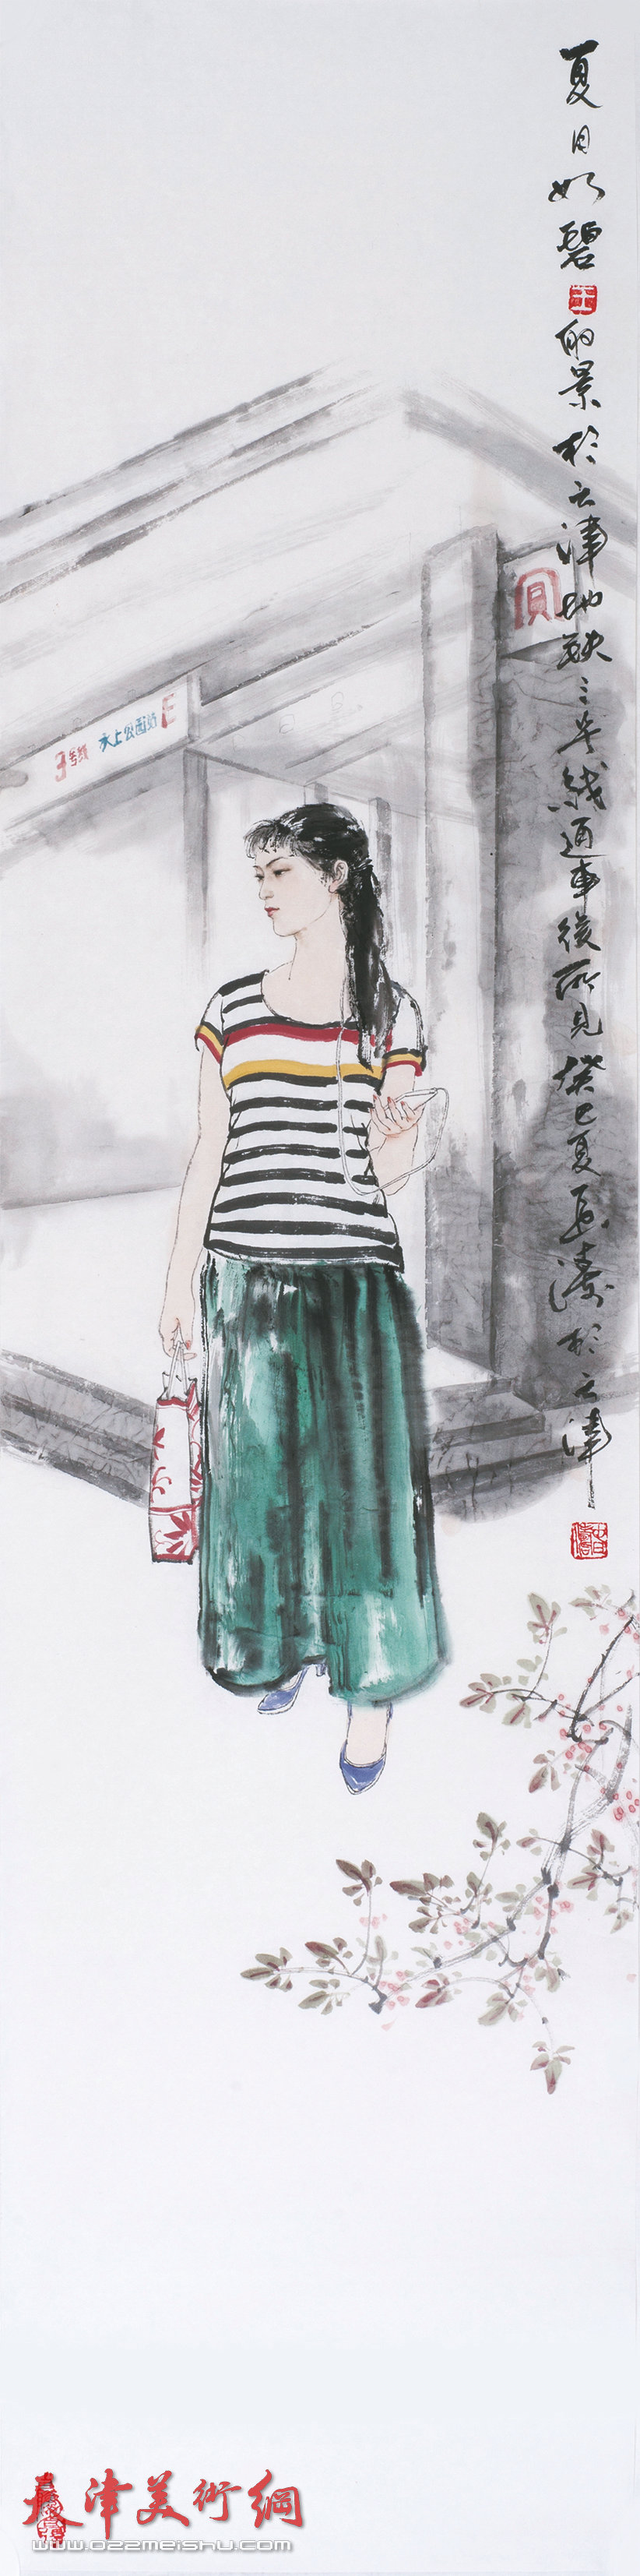 王春涛画展在齐鲁大地展津派画家风采，图为展出的王春涛新作《夏景如碧》